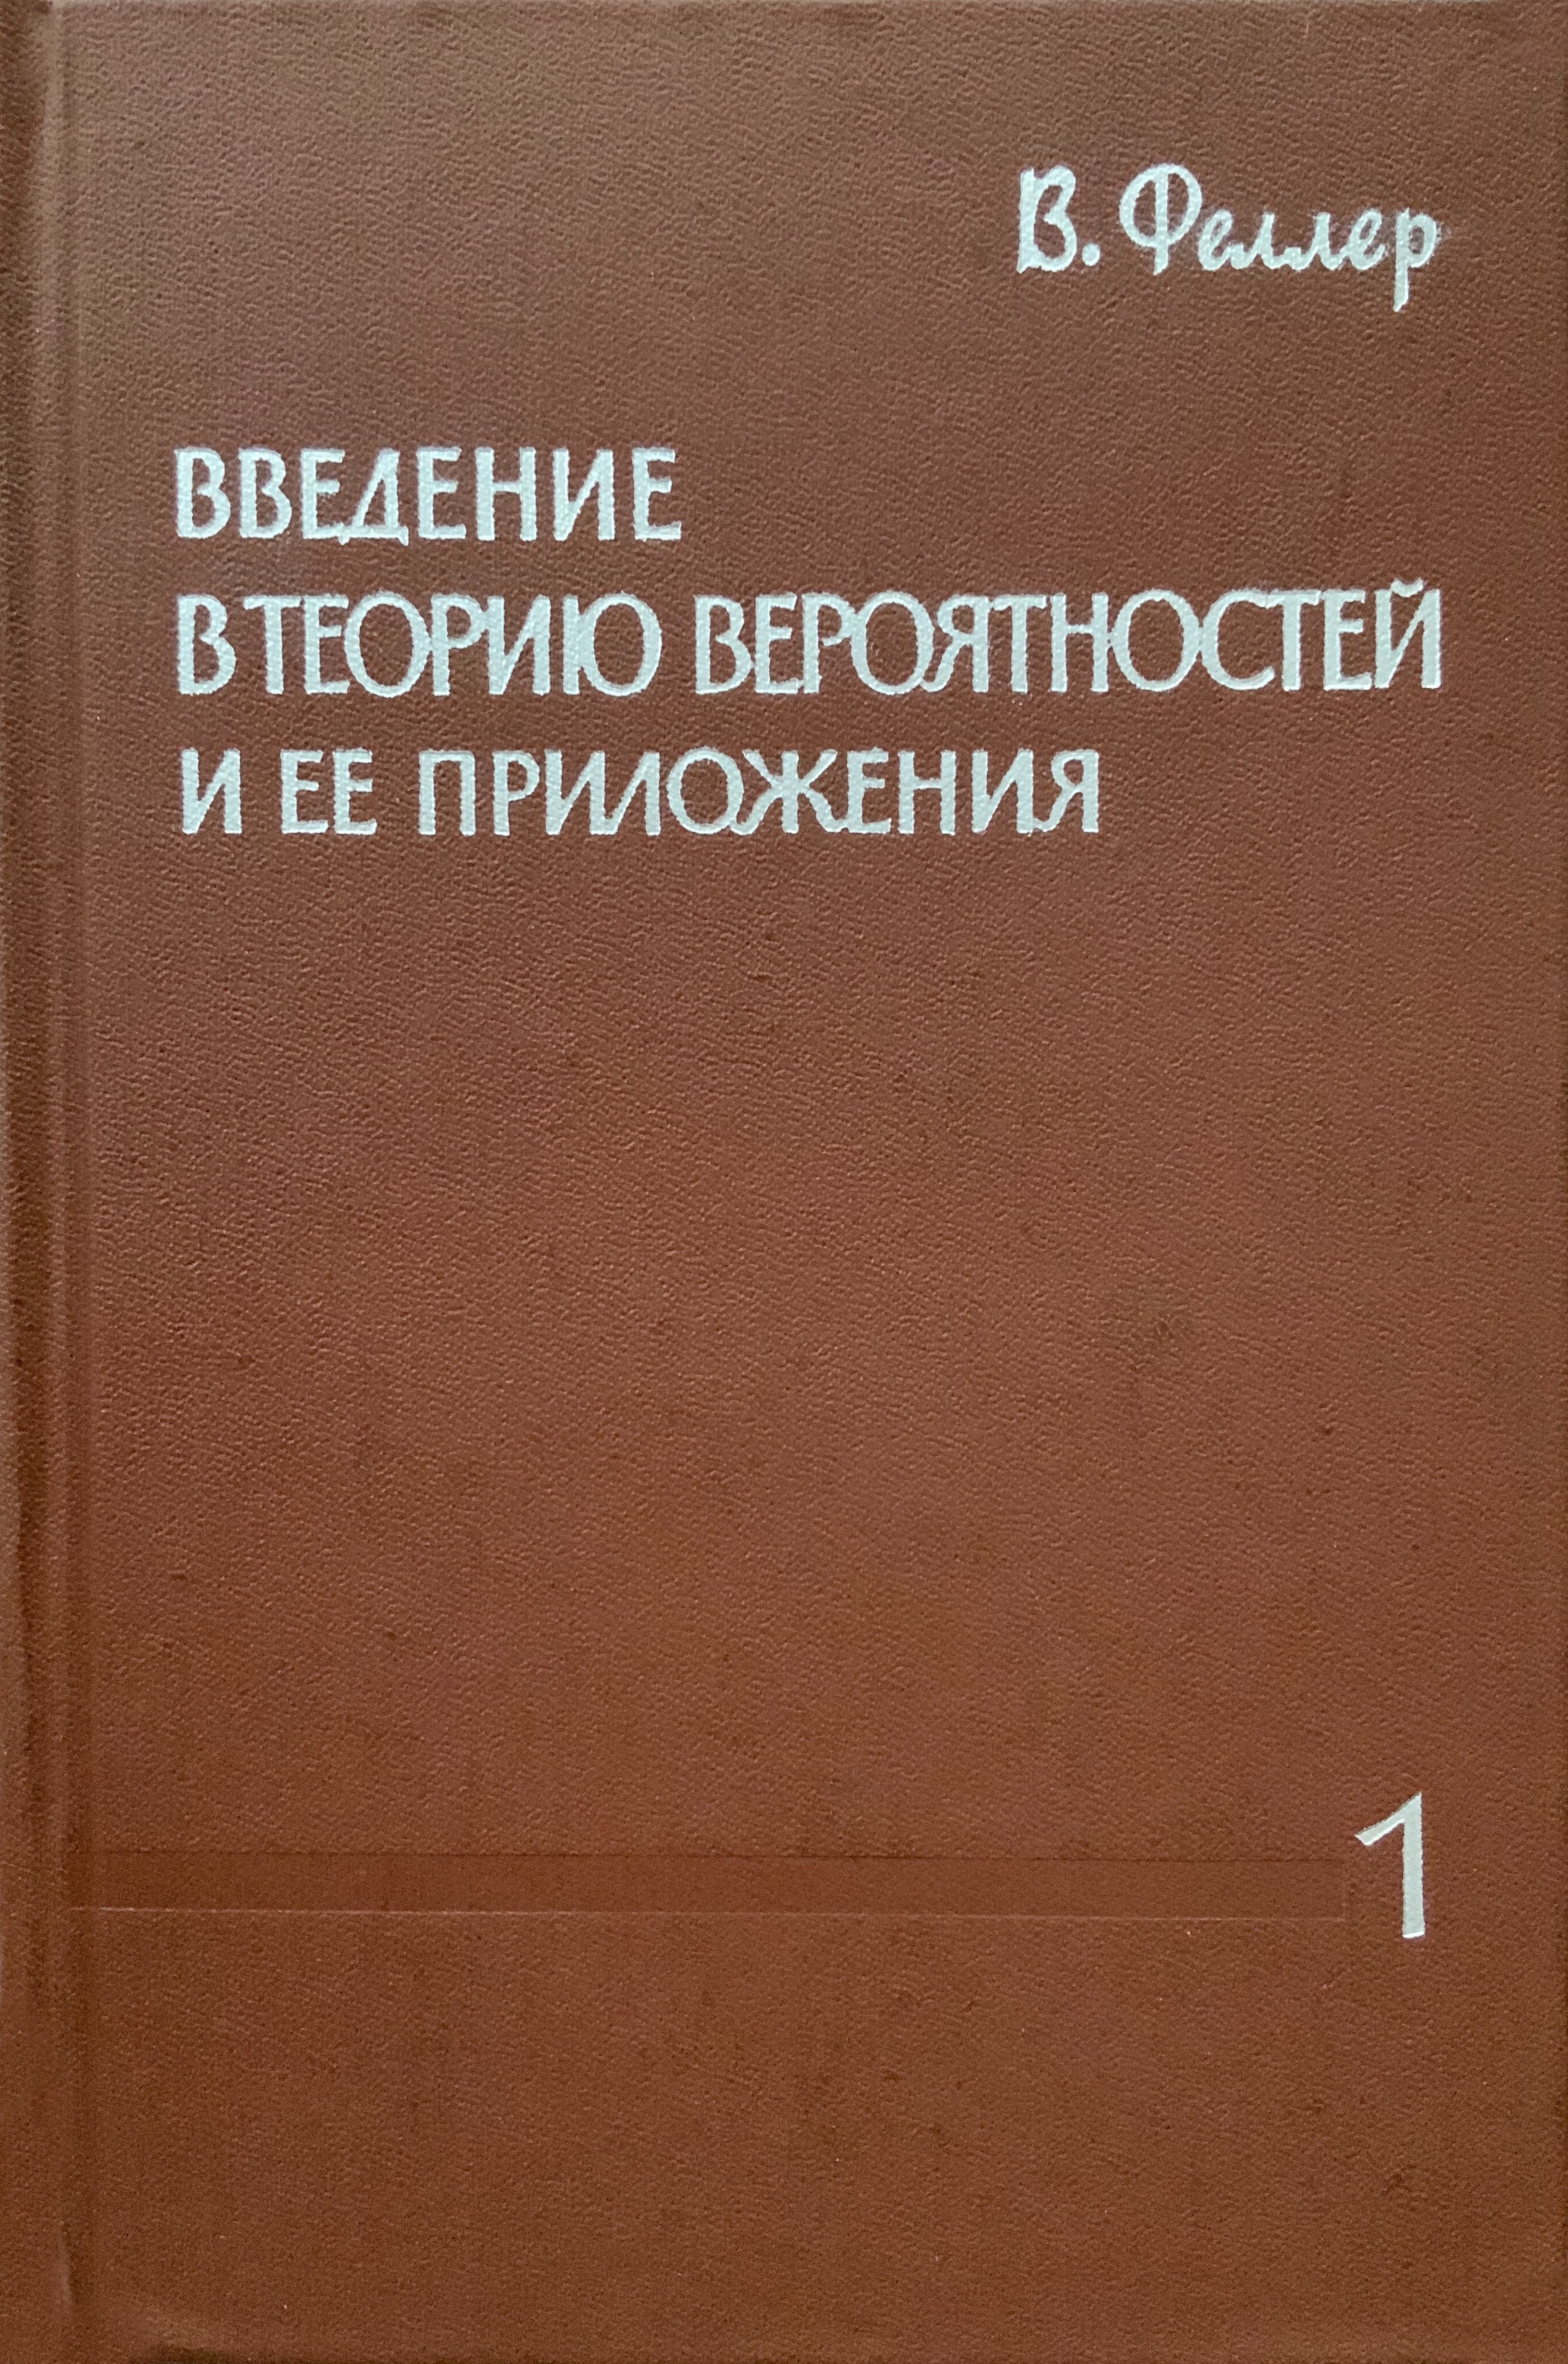 Обложка 1 т. 2 изд.